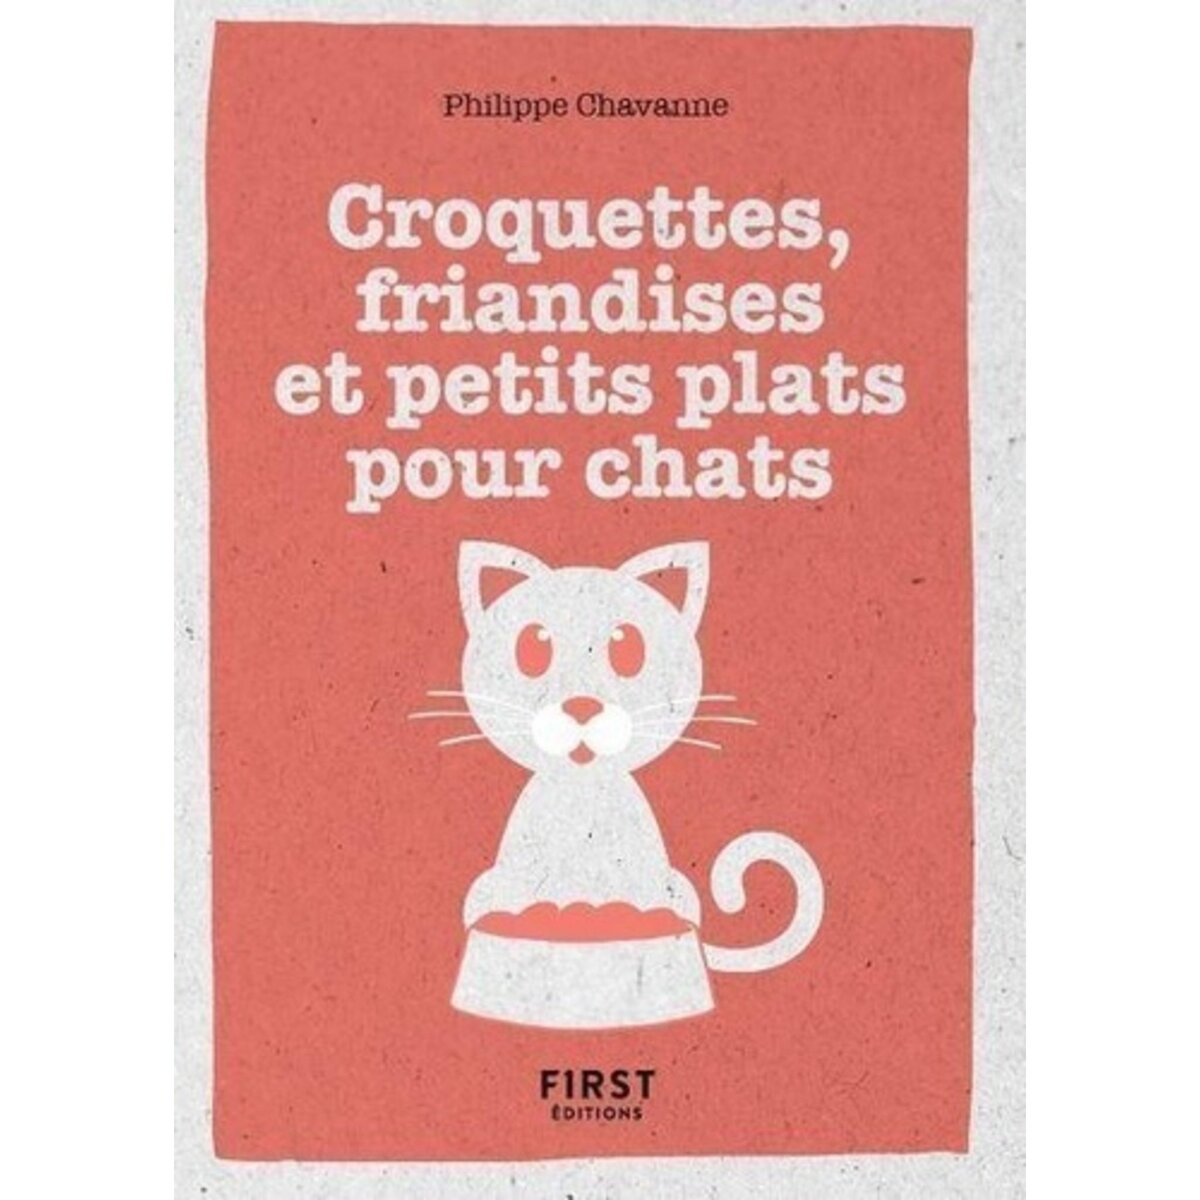  CROQUETTES, FRIANDISES ET PETITS PLATS POUR CHATS, Chavanne Philippe